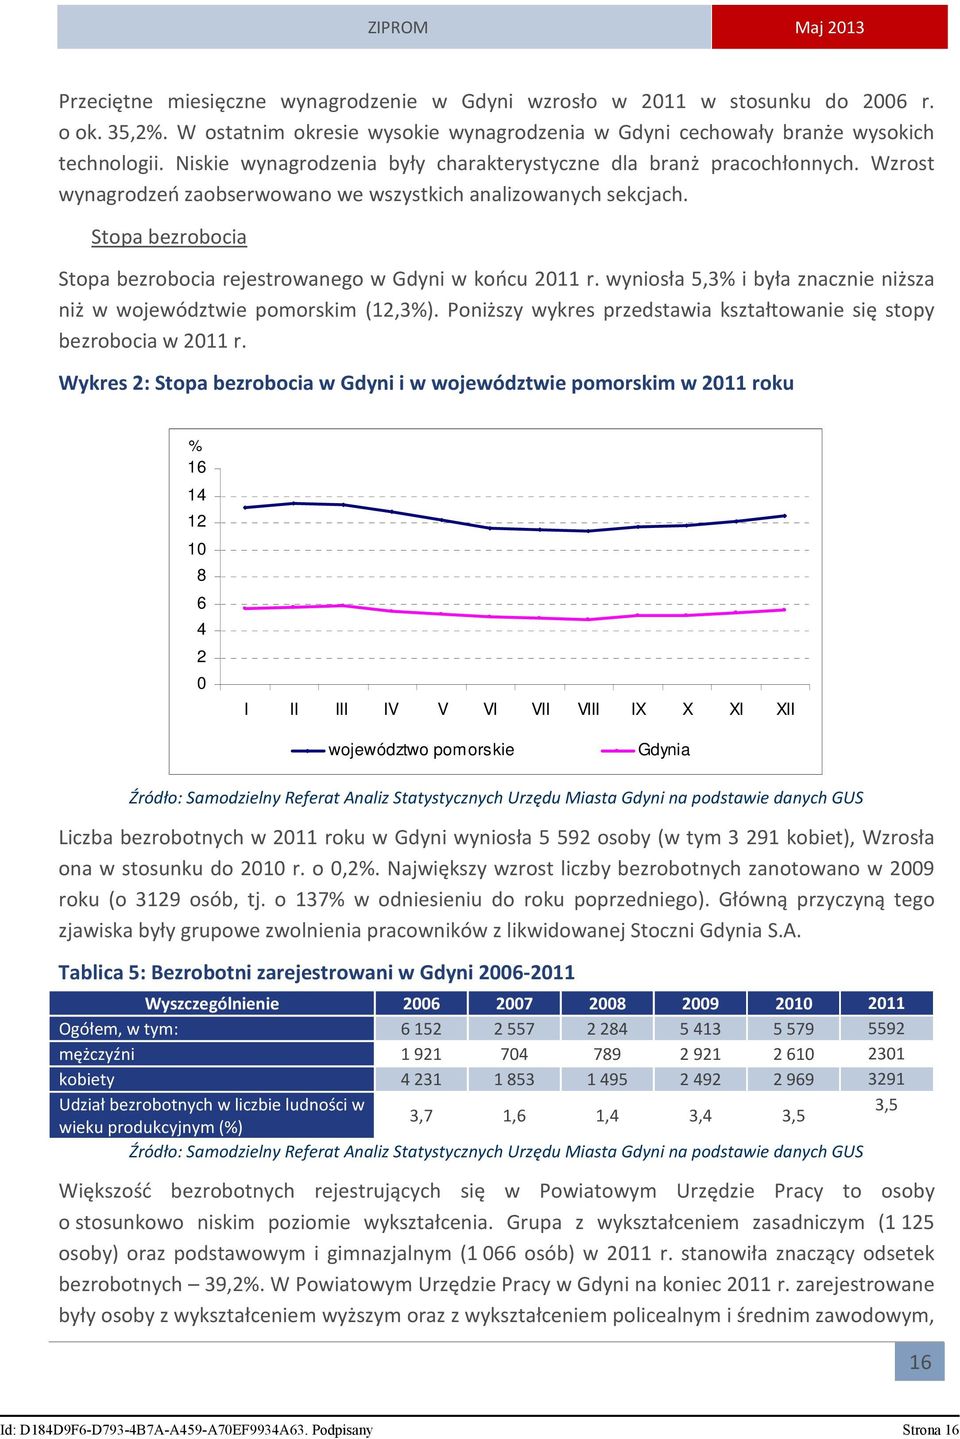 Stopa bezrobocia Stopa bezrobocia rejestrowanego w Gdyni w końcu 2011 r. wyniosła 5,3% i była znacznie niższa niż w województwie pomorskim (12,3%).